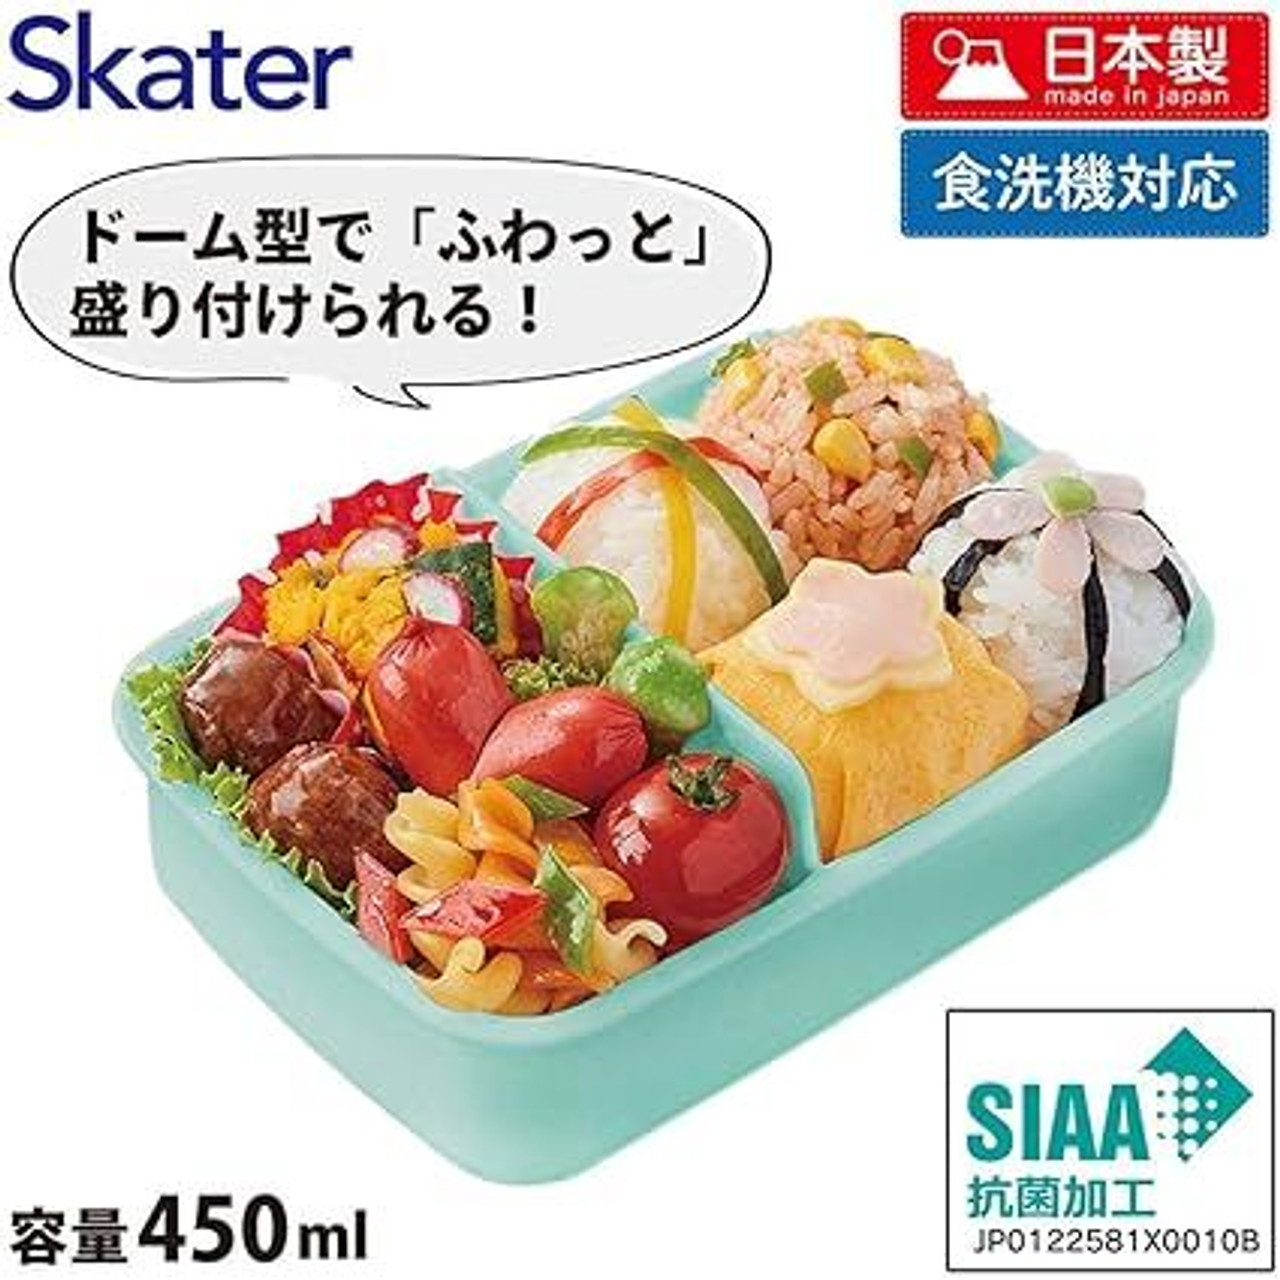 Skater Pokedays Easy Light Lunch Box Large Size 720ml